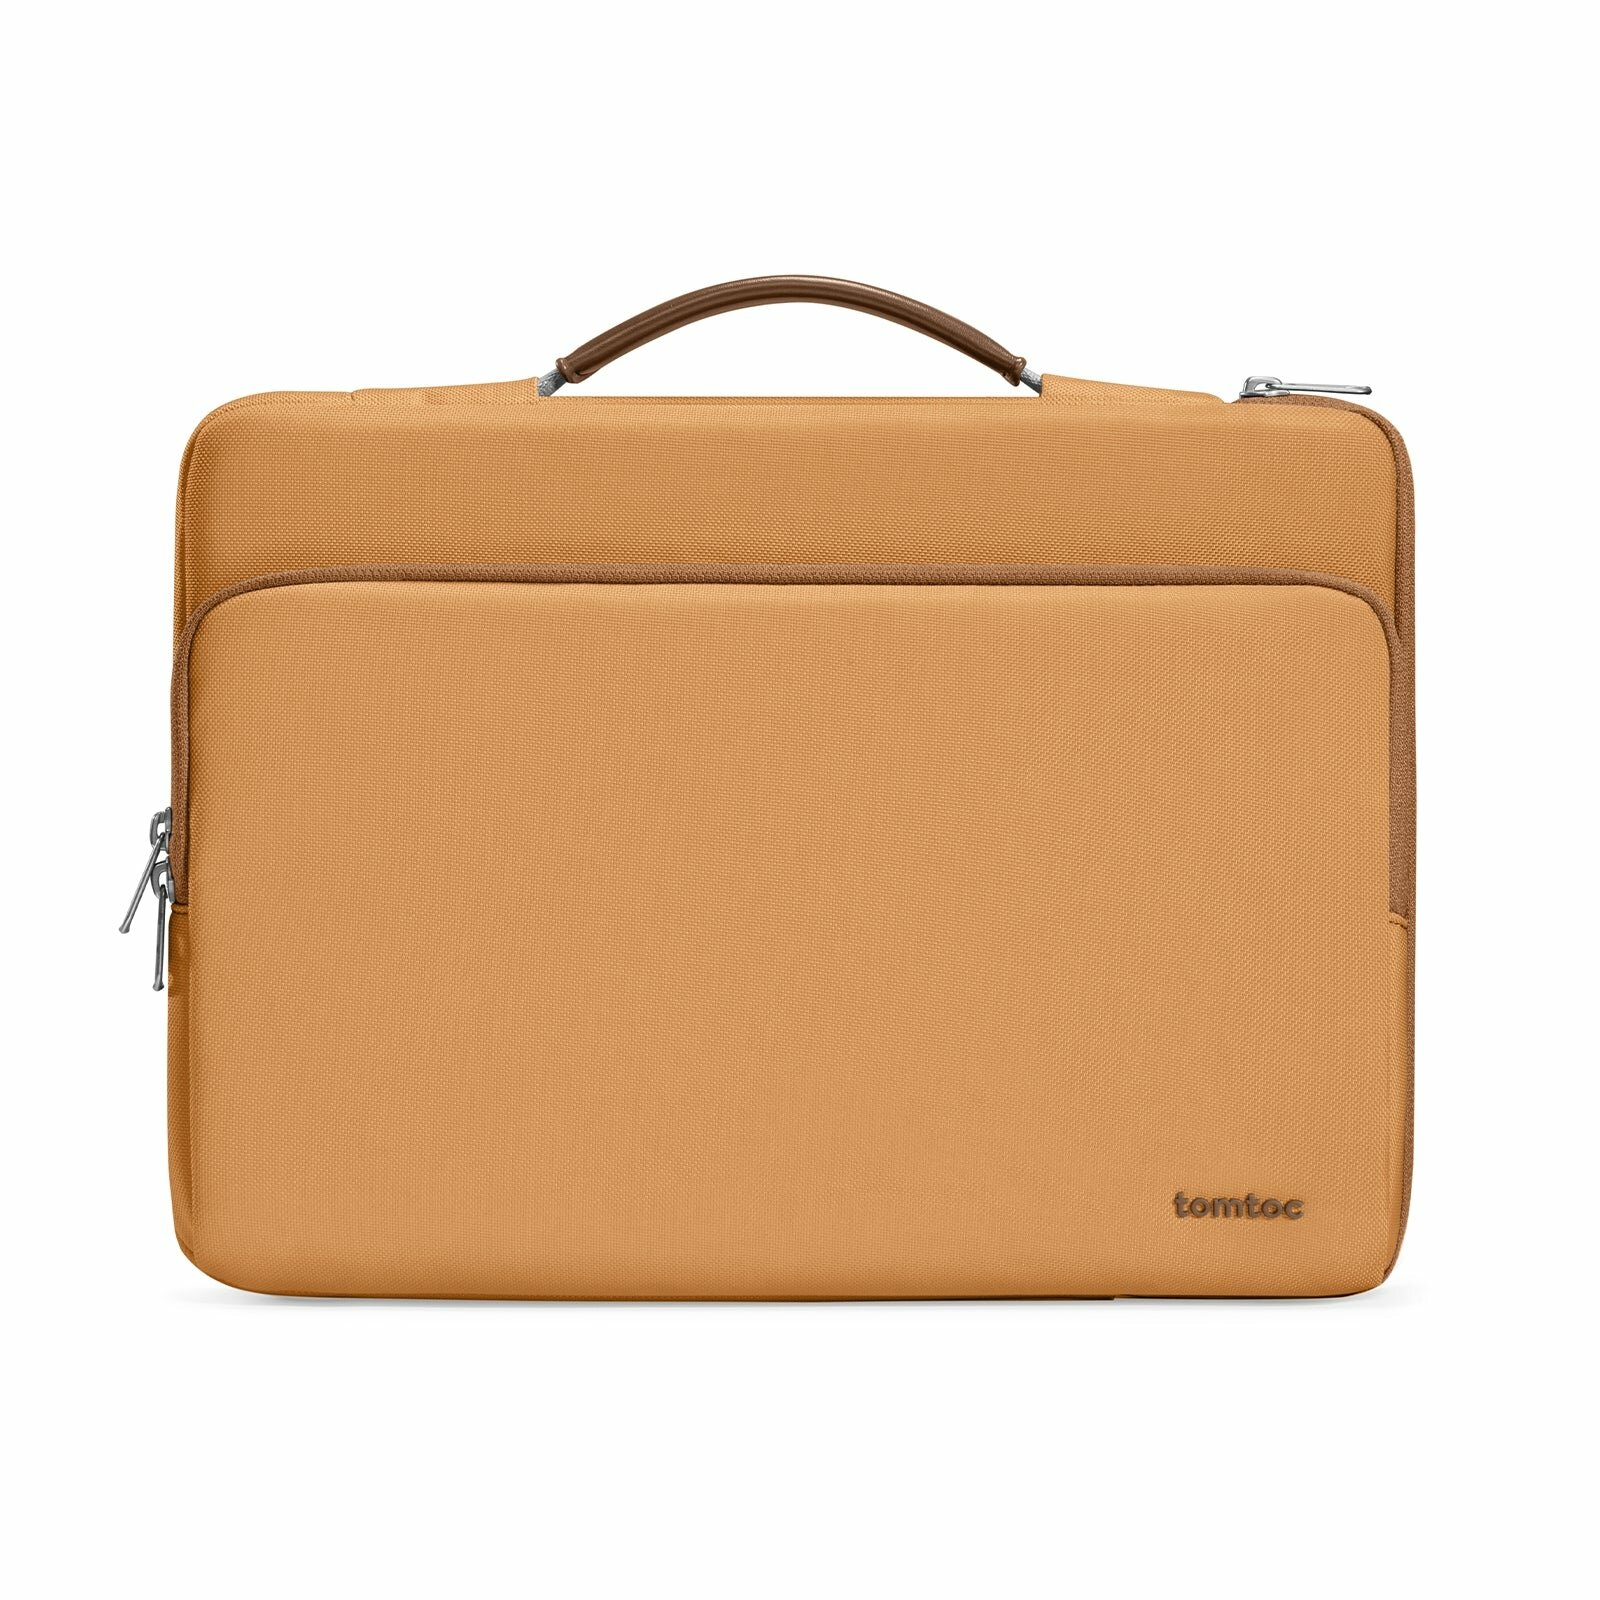 Сумка Tomtoc Defender A14 Laptop Handbag для Macbook Pro 13/Pro 14/Air 13 Bronze